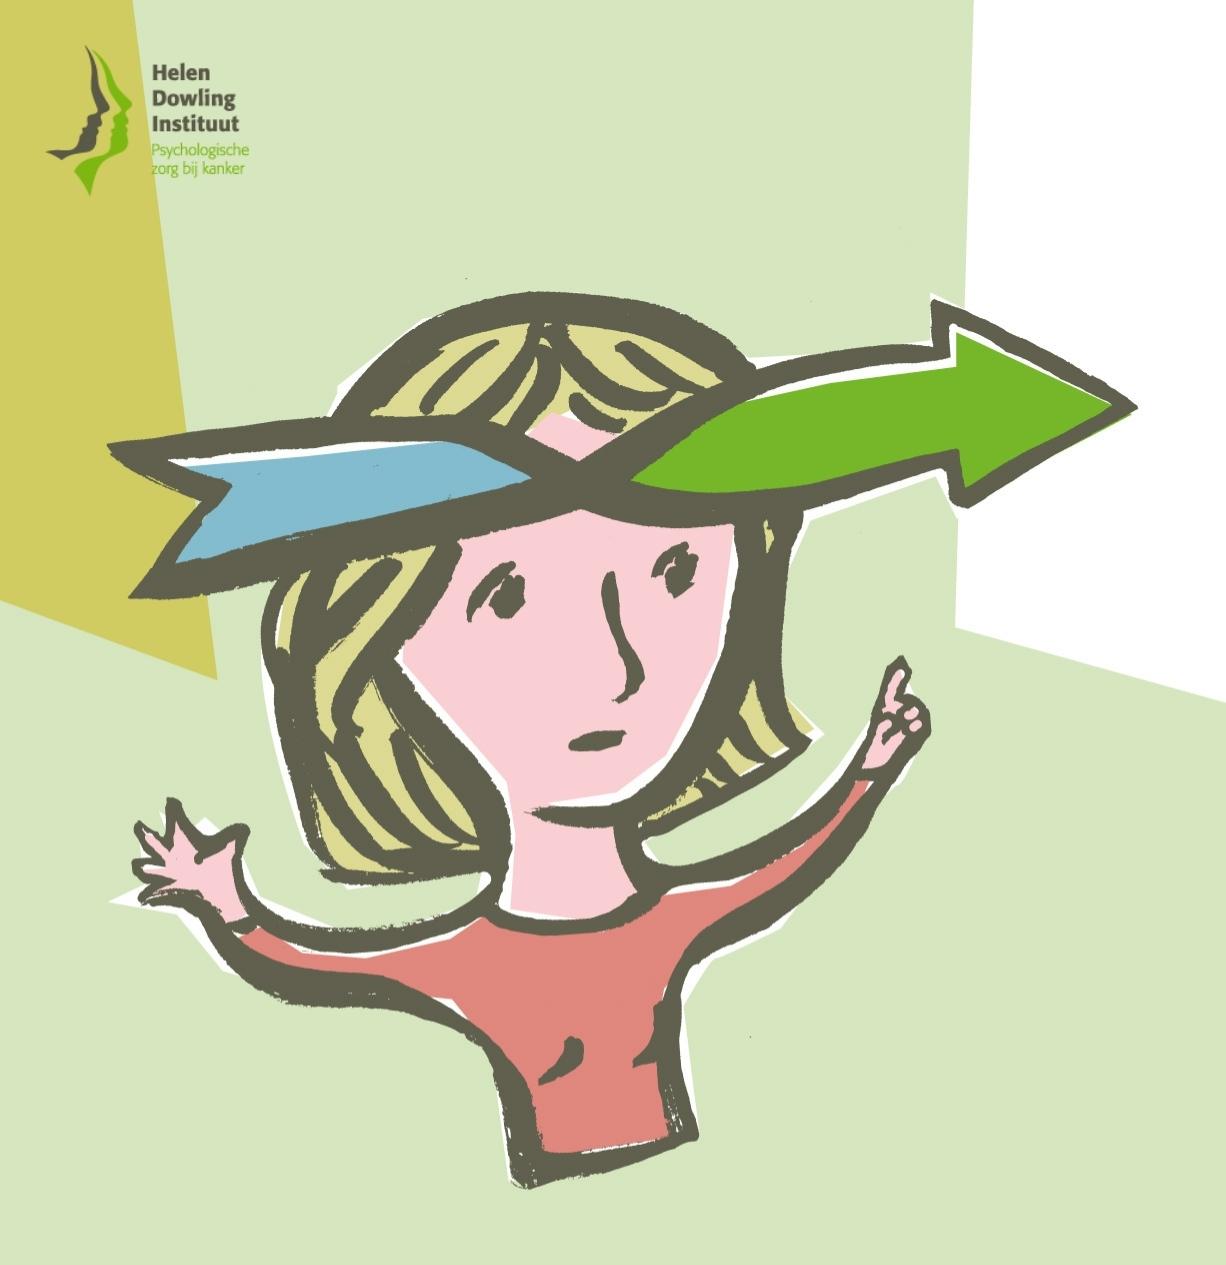 Illustratie bij het wetenschappelijk onderzoek MATCH, van het Helen Dowling Instituut: een vrouw staat met haar handen omhoog en heeft een pijl over haar hoofd die bestaat uit twee delen: de achterkant is blauw en de voorkant is groen.